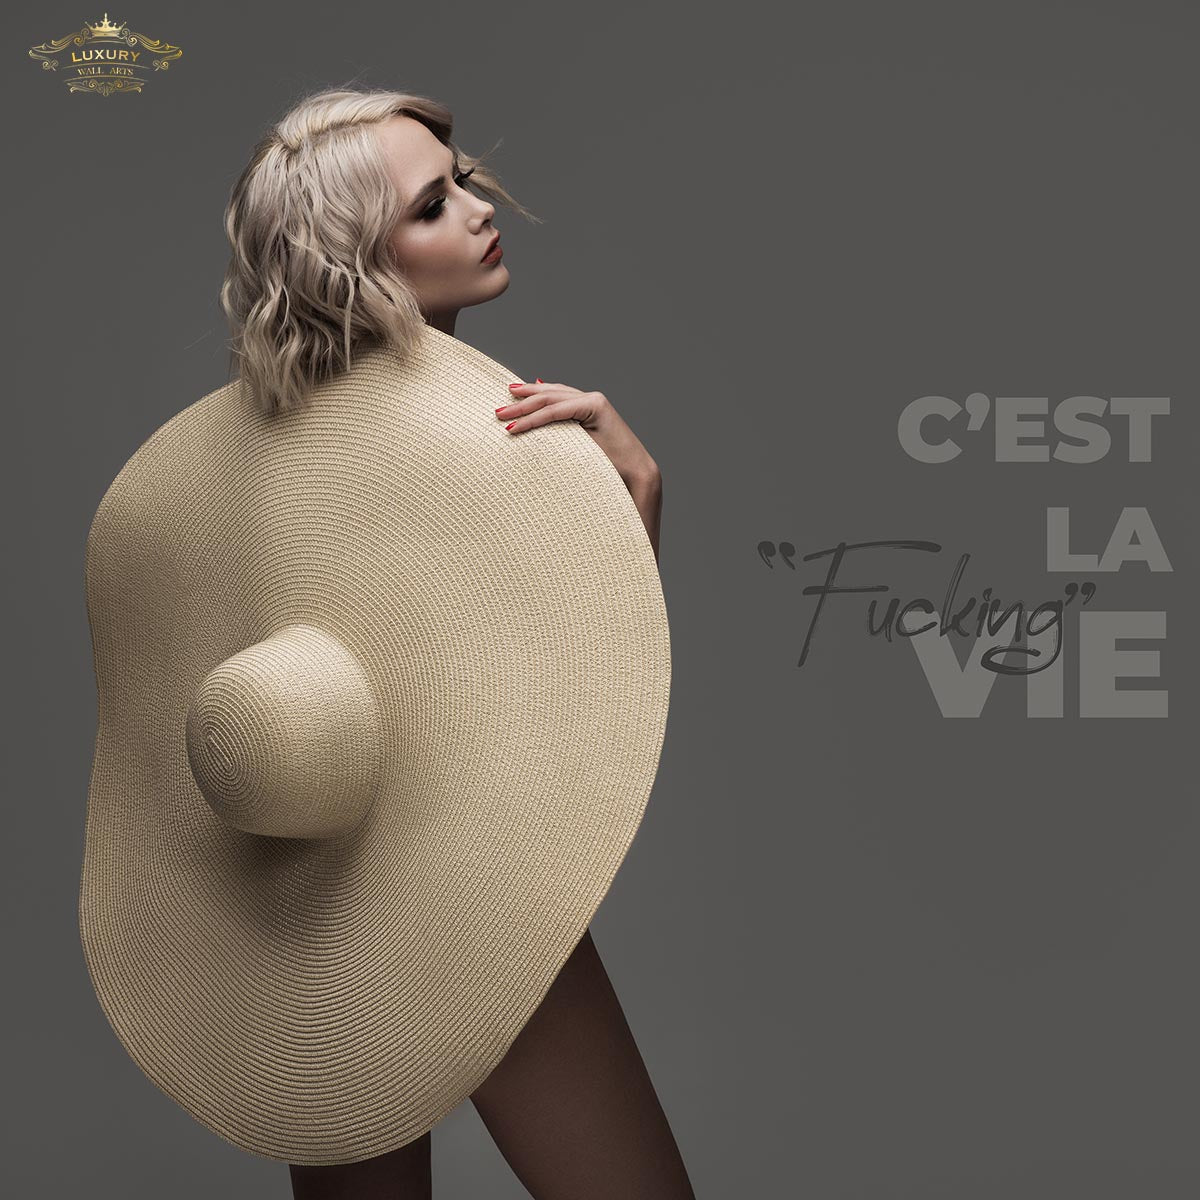 Cest La Fucking Vie Posters Prenten En Visuele Kunstwerken